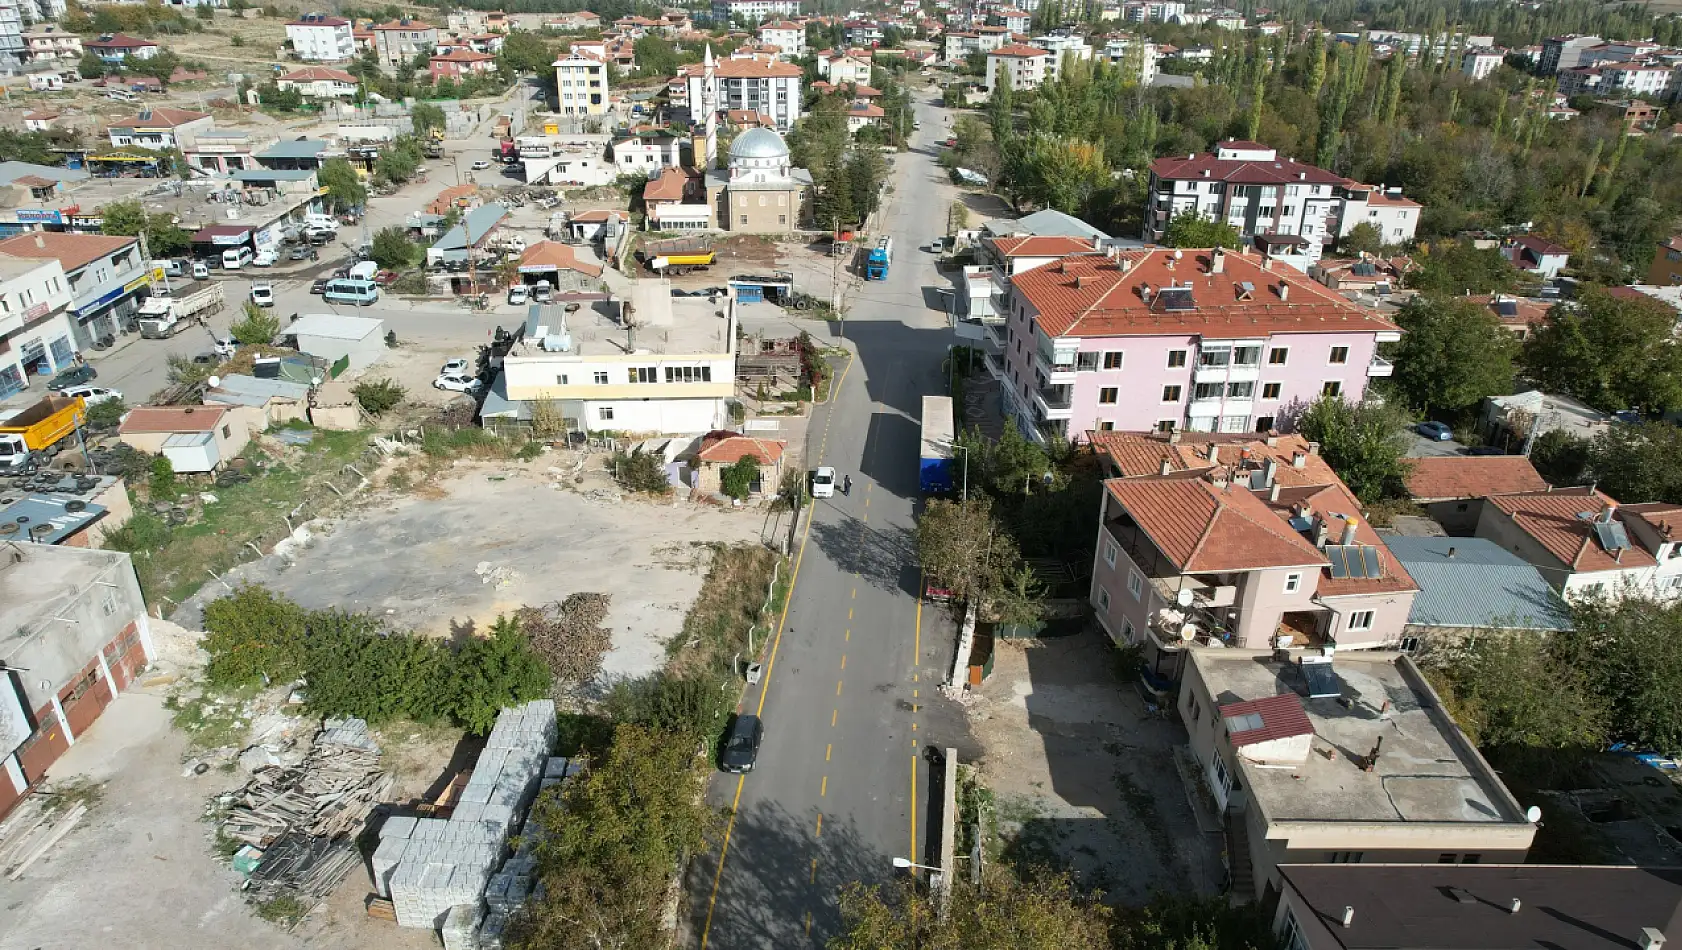 Flaş karar! Kayseri'de sınır değişiyor, O mahalle ikiye bölünecek ve yeni bir mahalle kurulacak